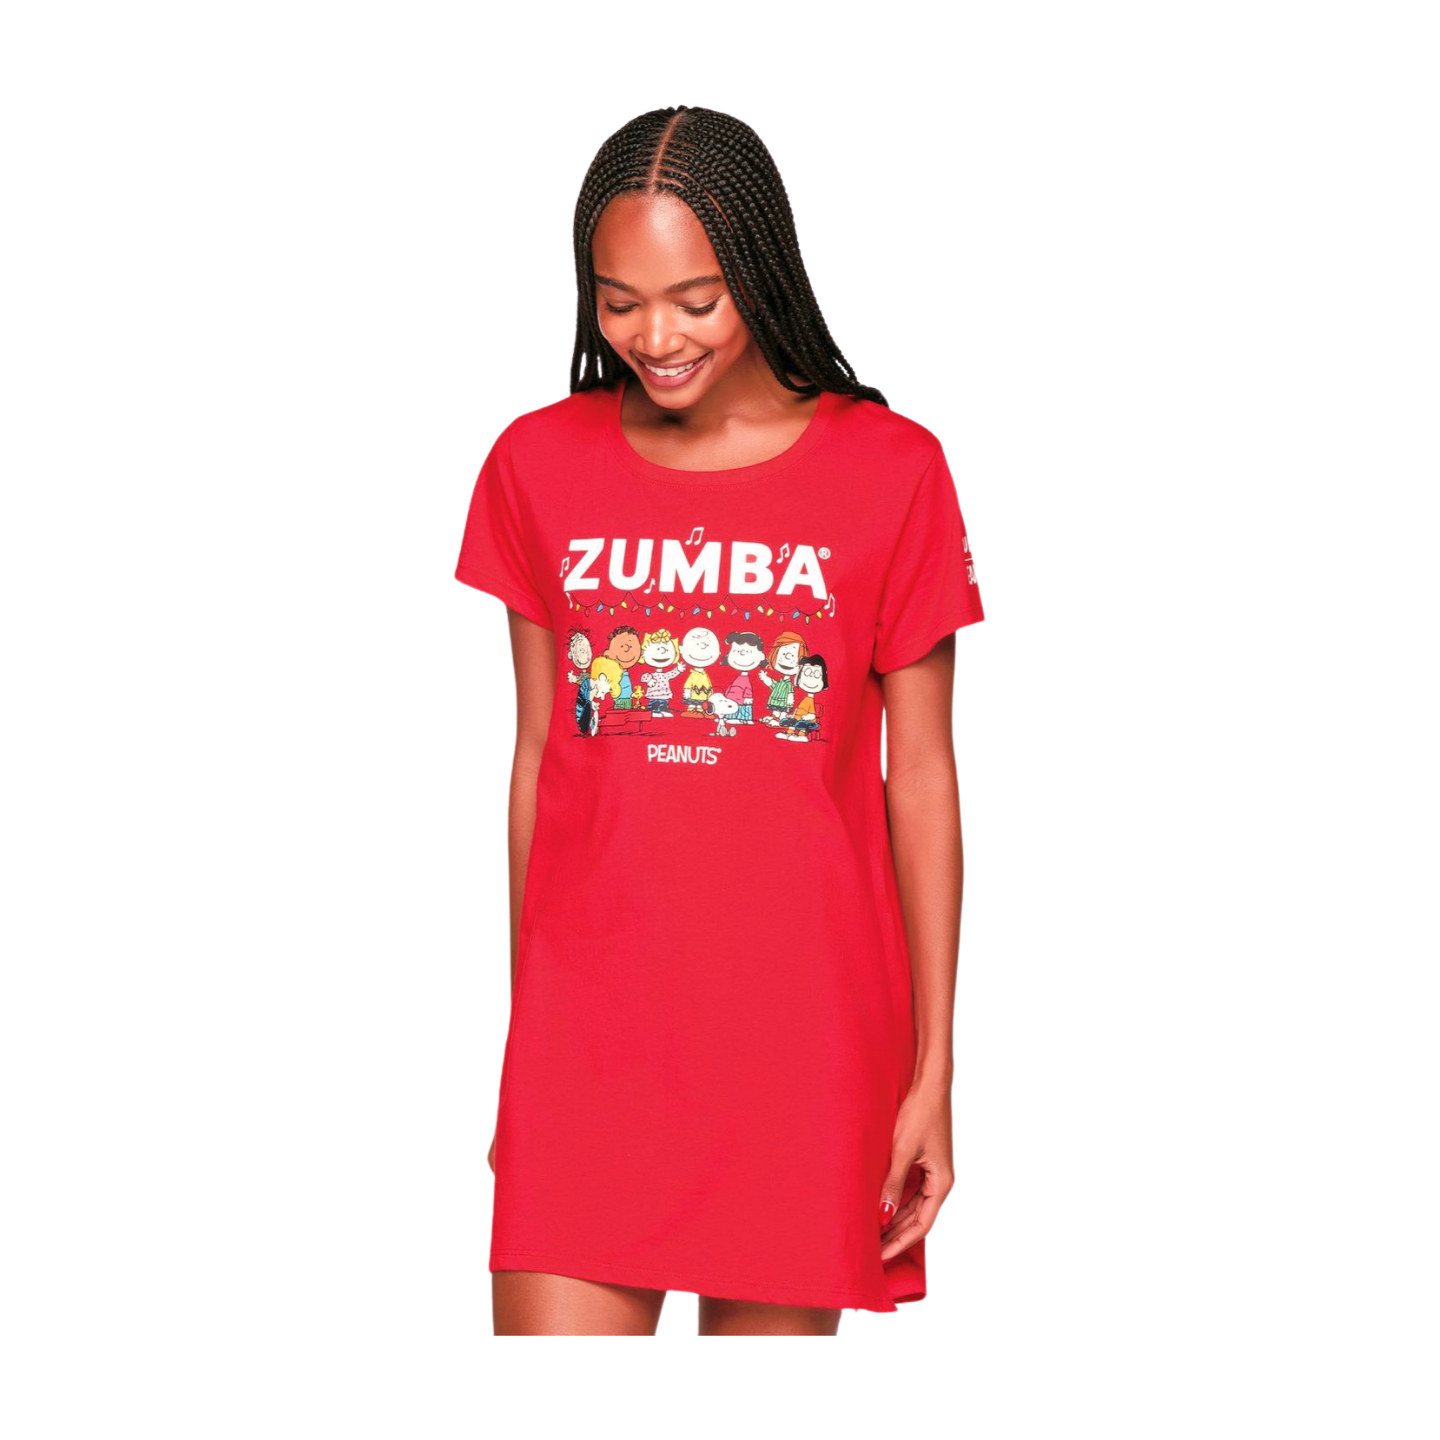 Zumba X Peanuts Sleep Shirt